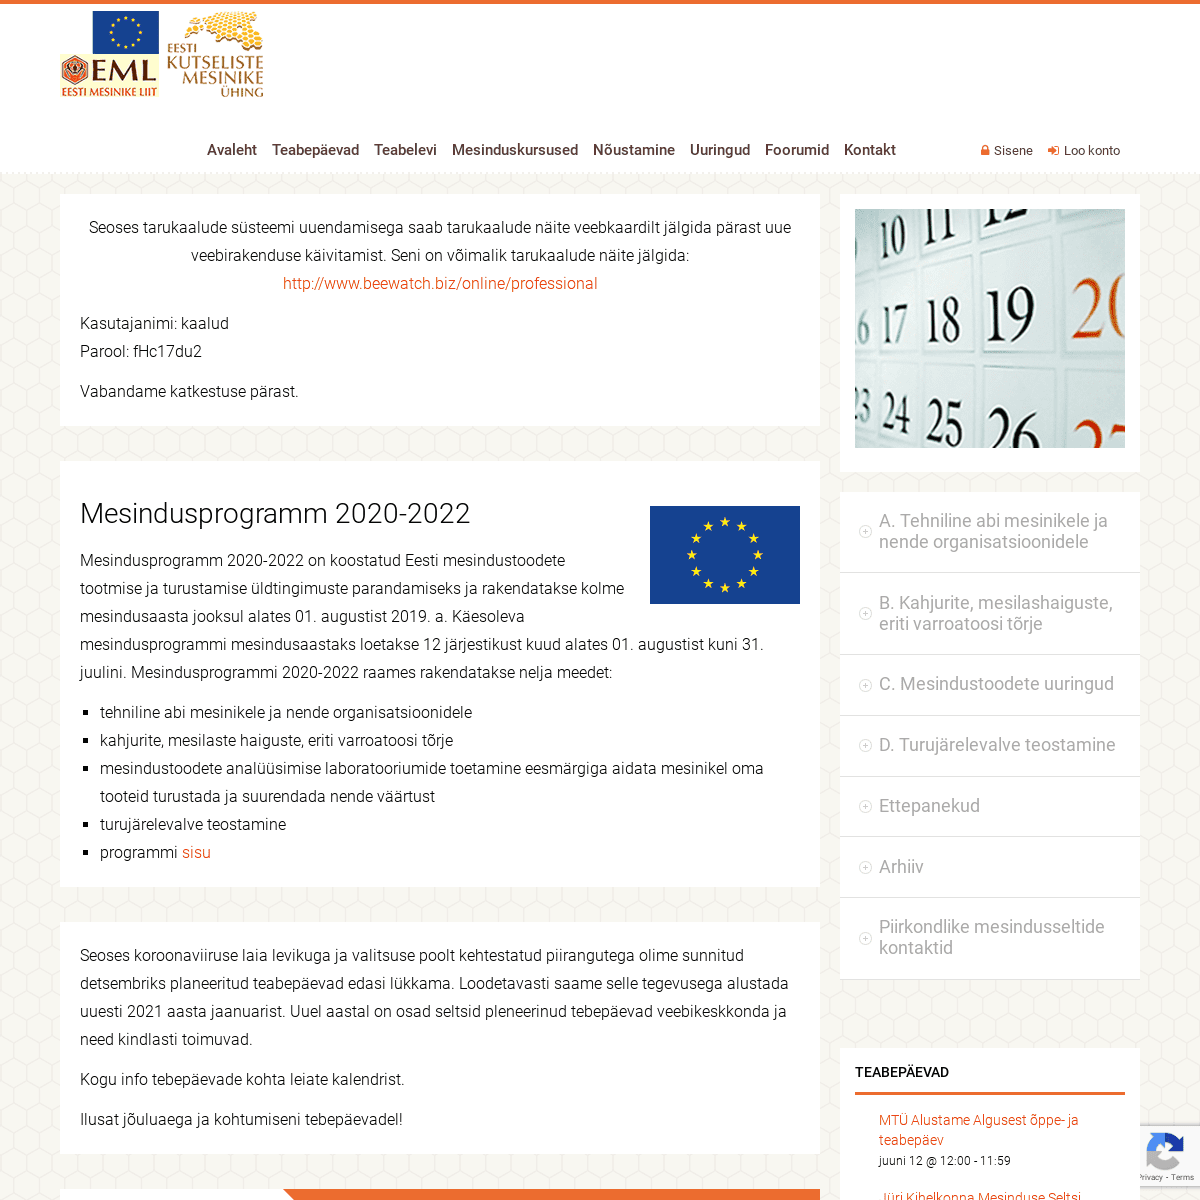 A complete backup of https://mesindusprogramm.eu